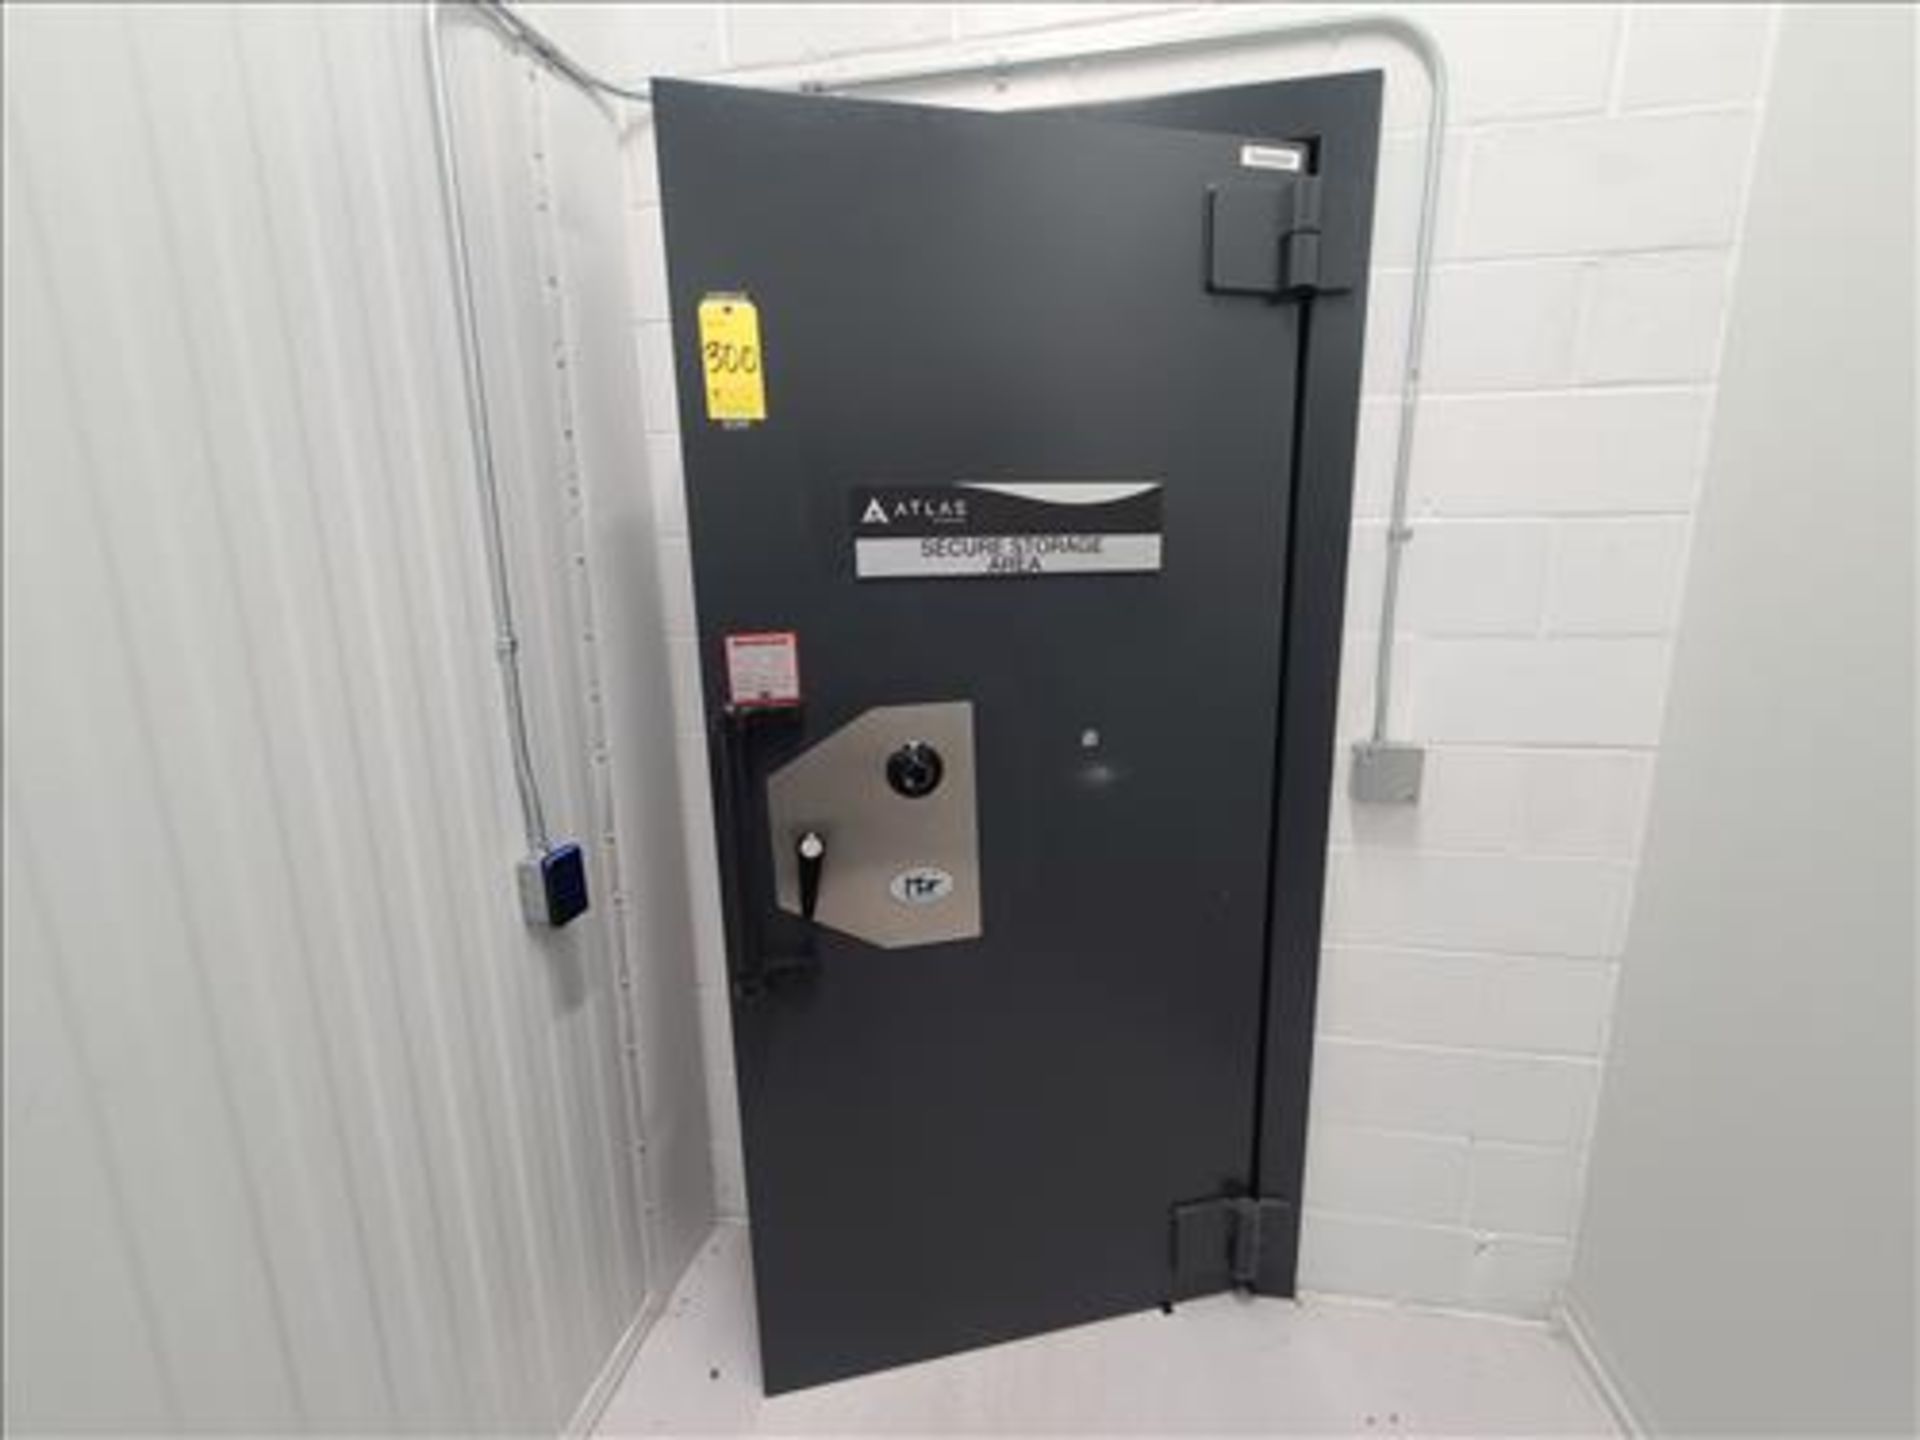 Adanac vault door, mod. WP13822, s/n MM70-20171003-11351 (combination unknown/subject to confirmati - Image 2 of 4